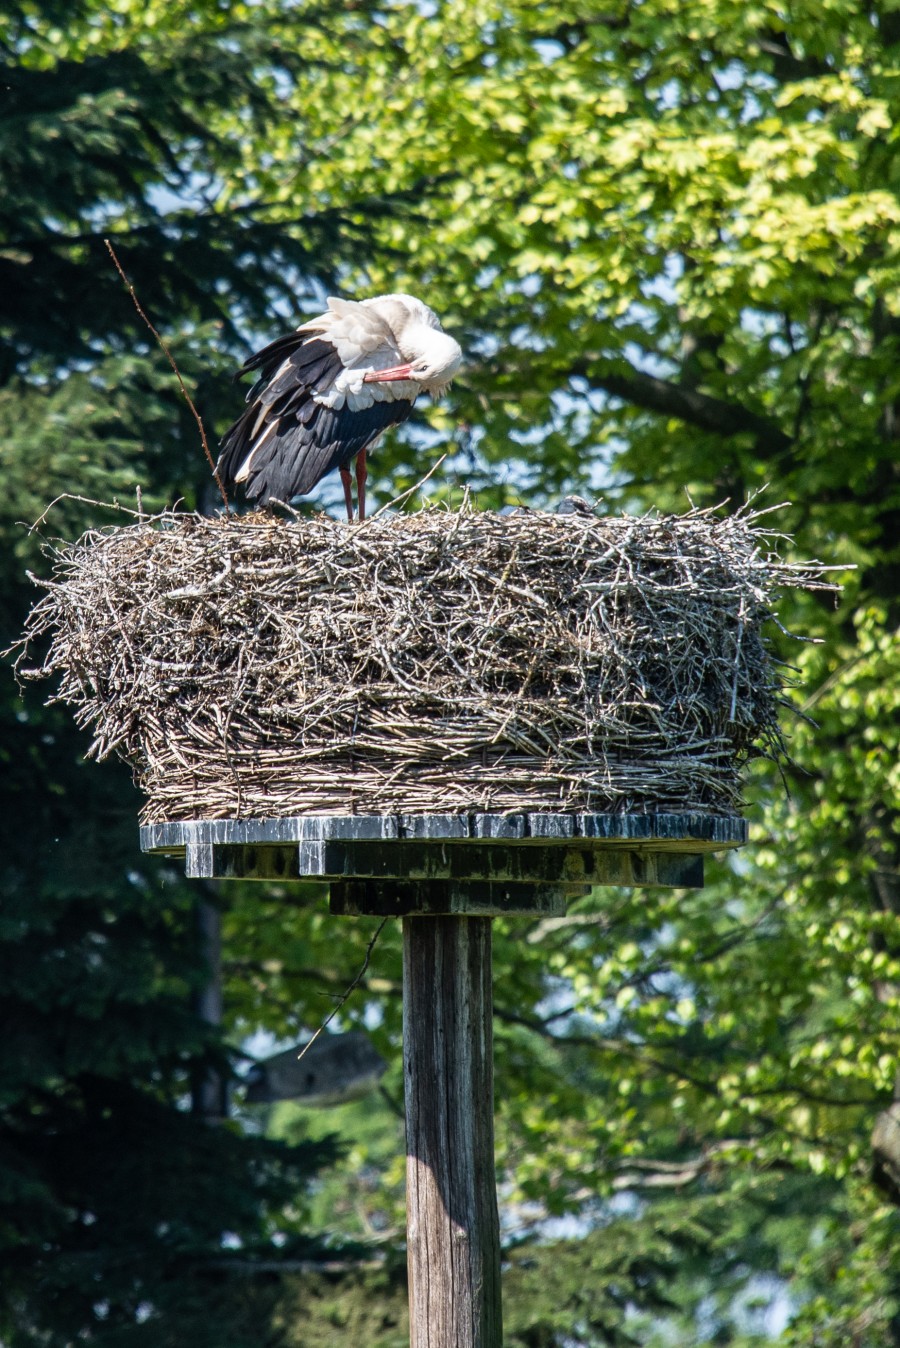 Stork on her nest